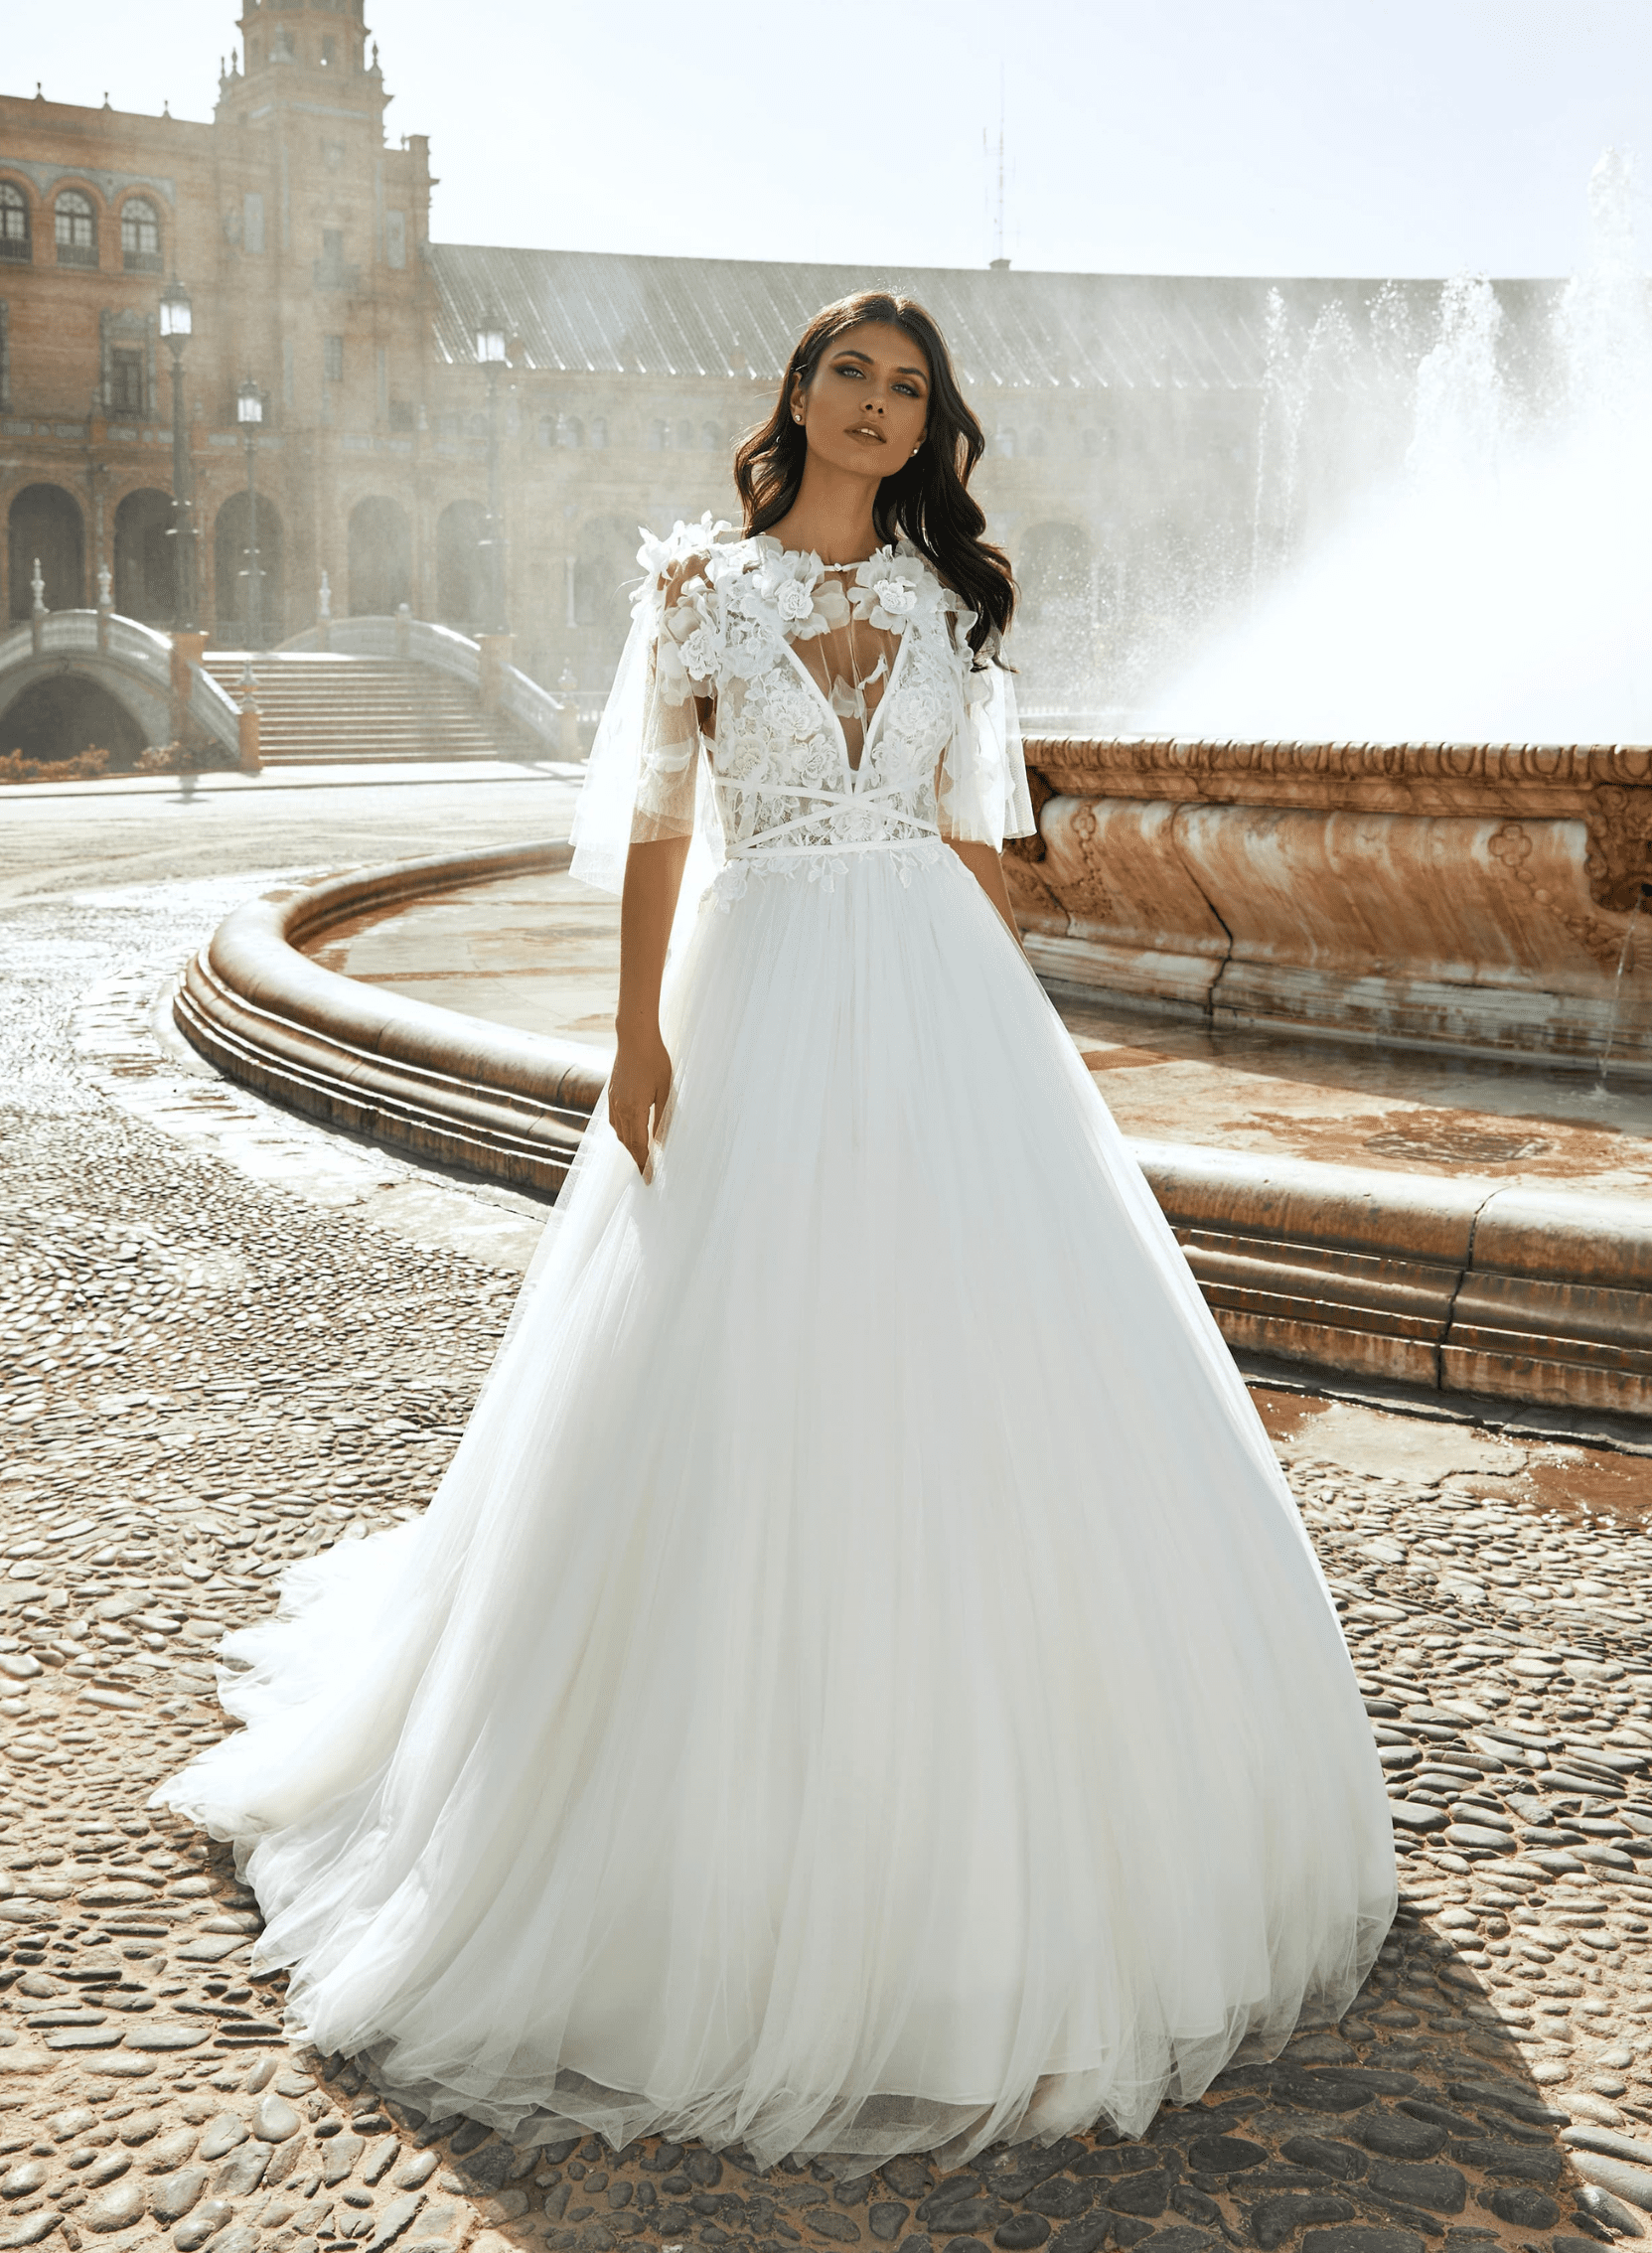 Obrázek ženy se svatebními šaty Hyperion od značky Pronovias